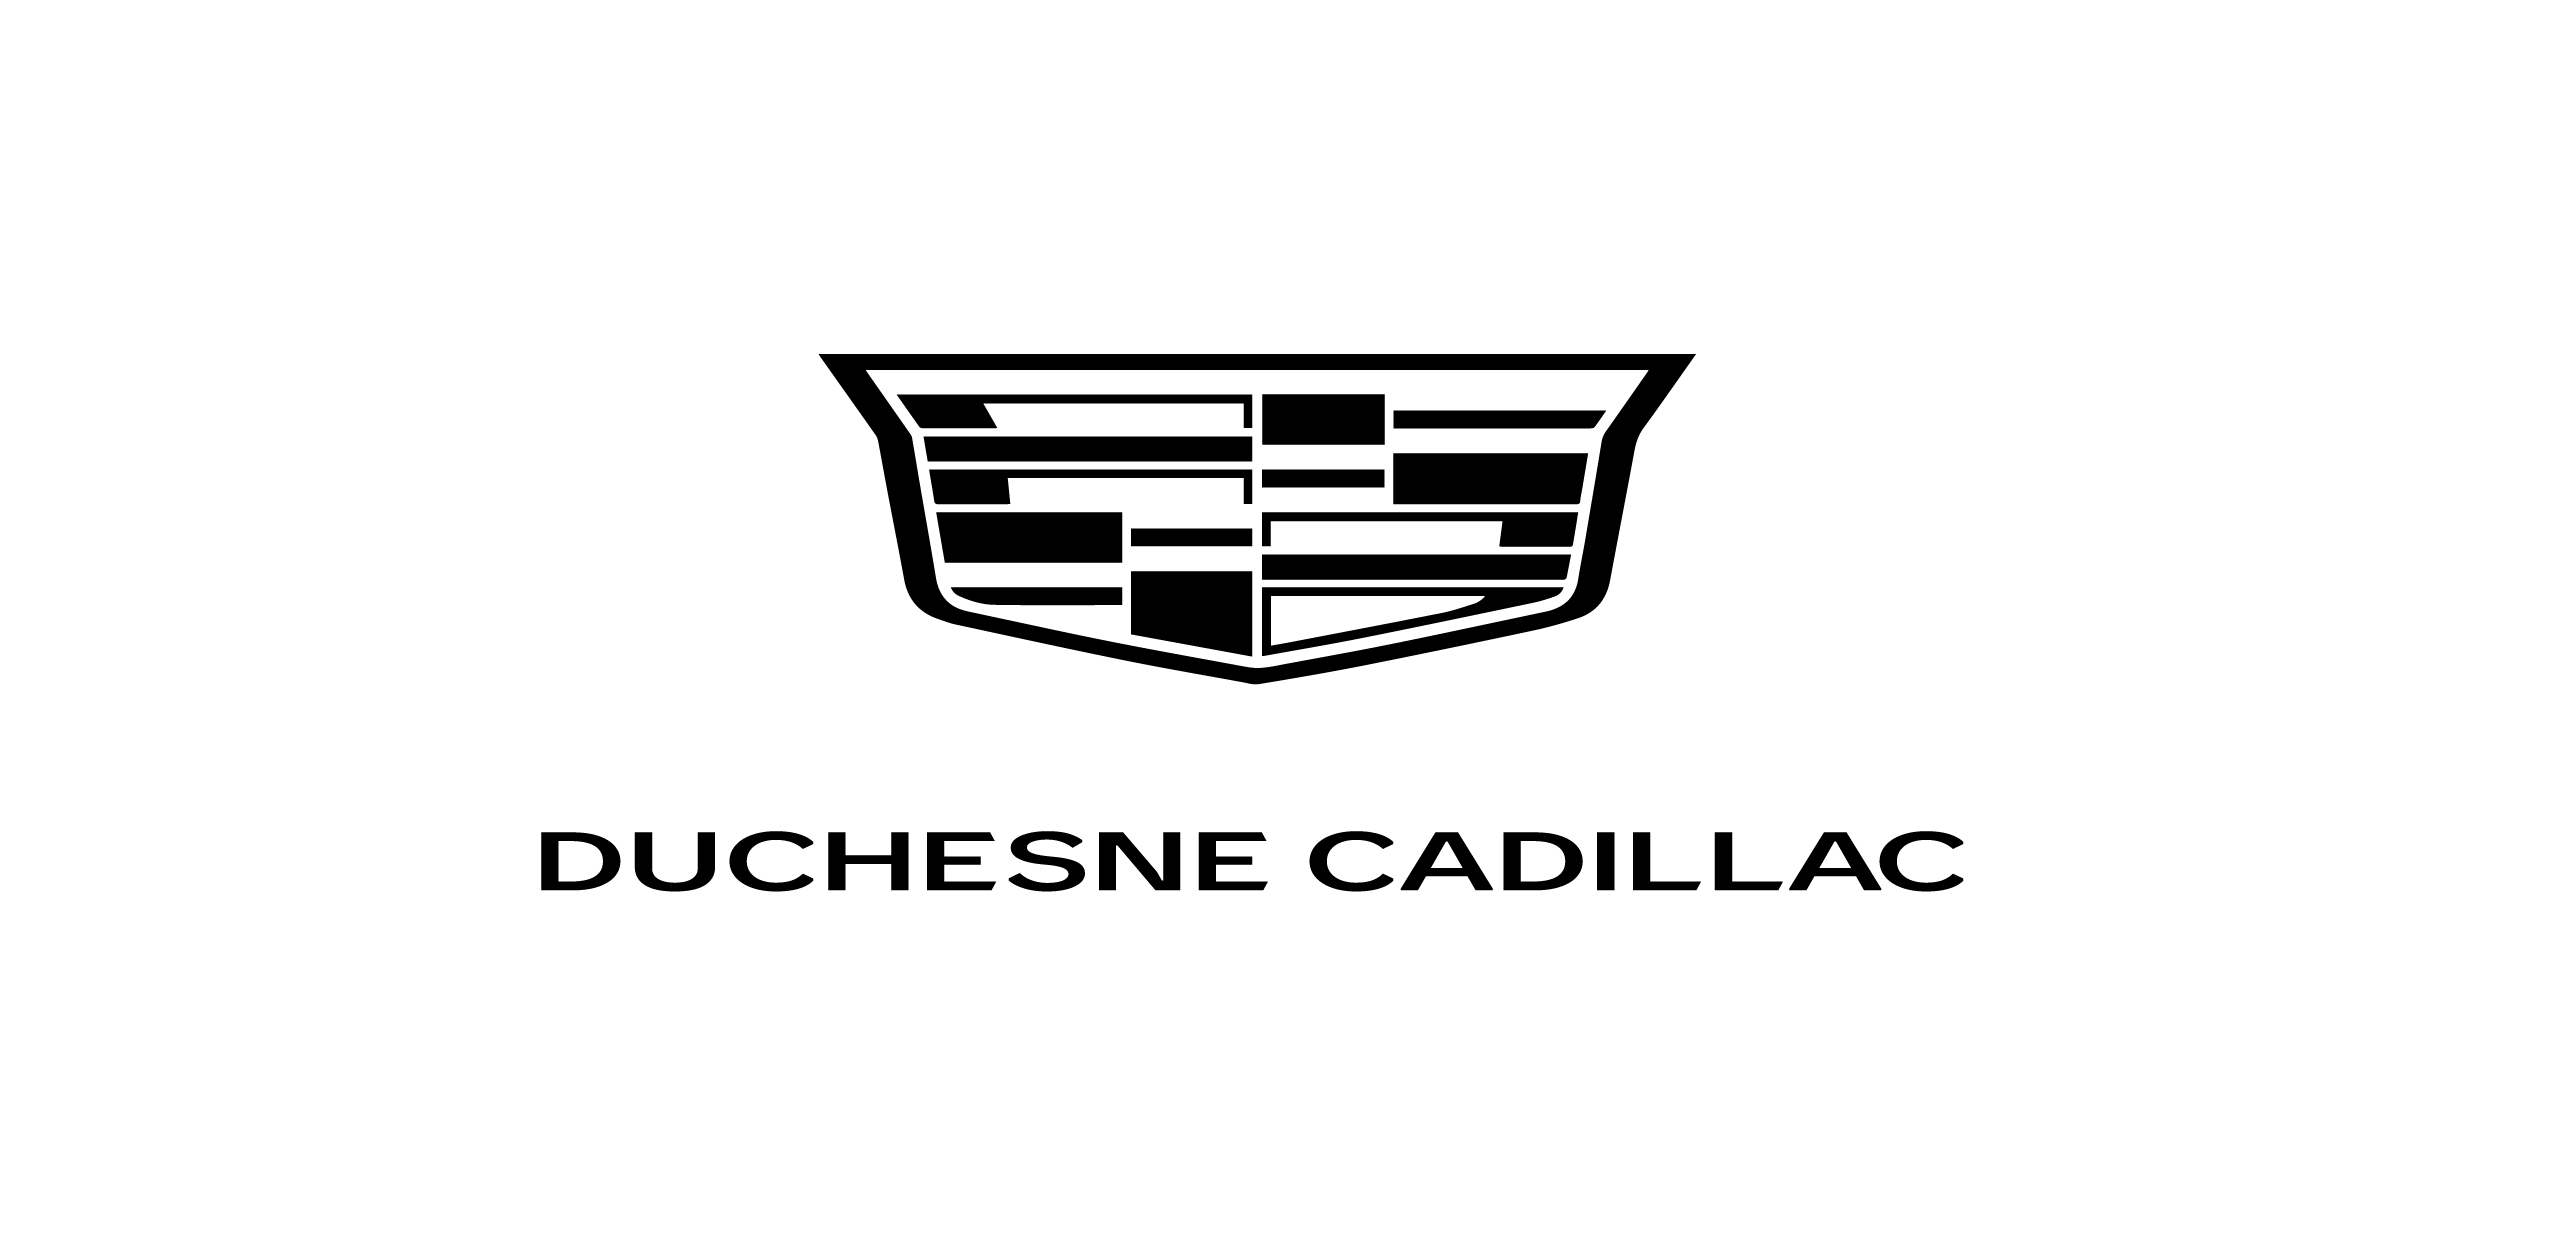 Duchesne Cadillac Logo